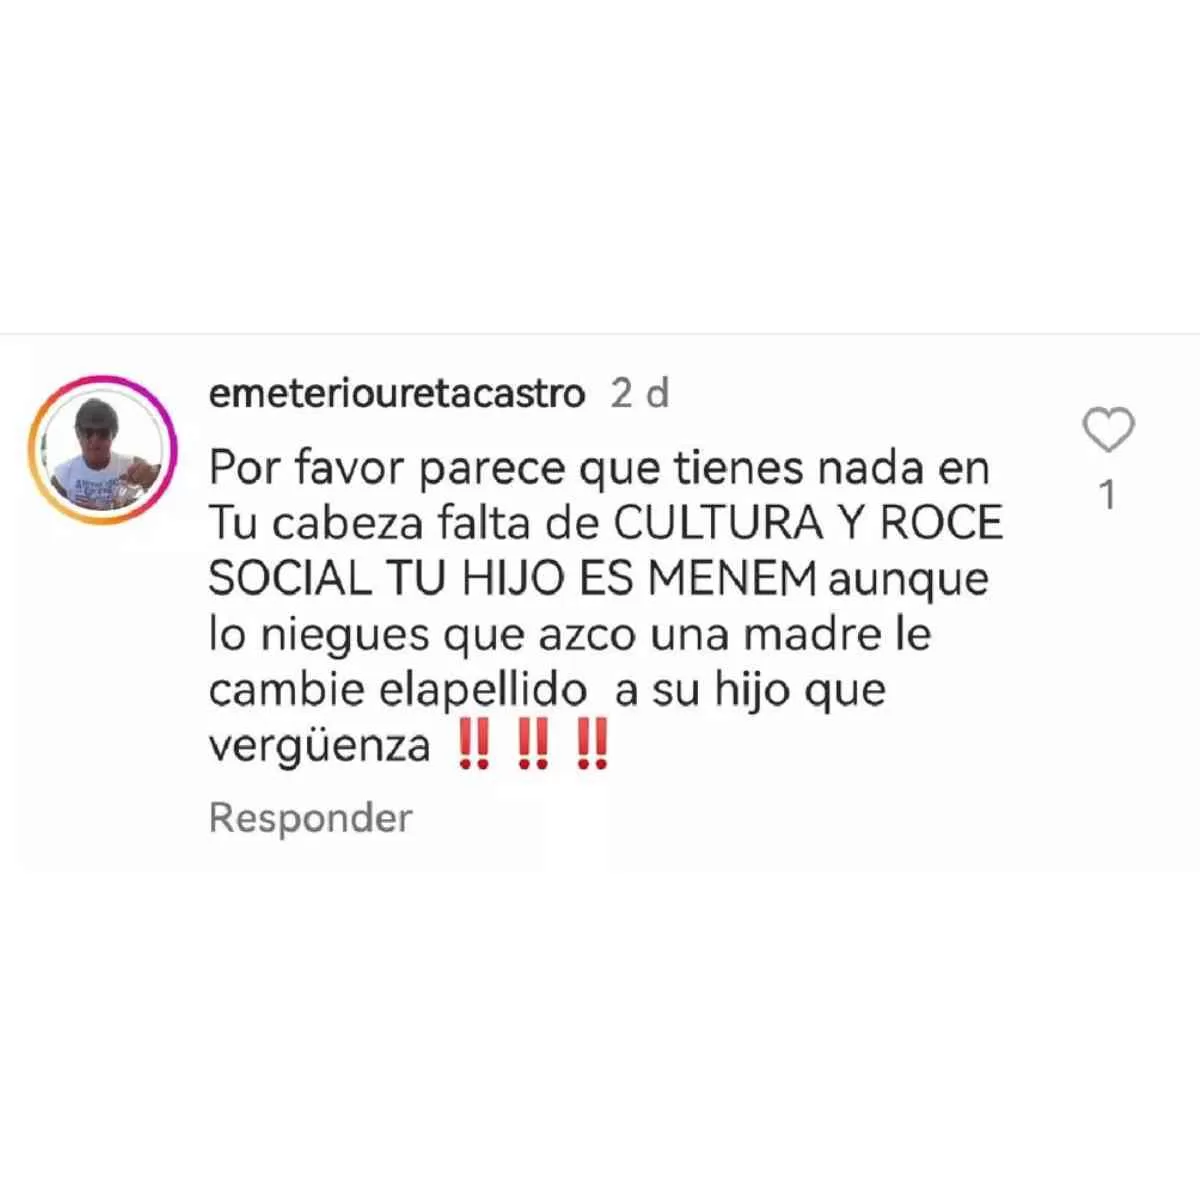 Instagram: @emeteriouretacastro